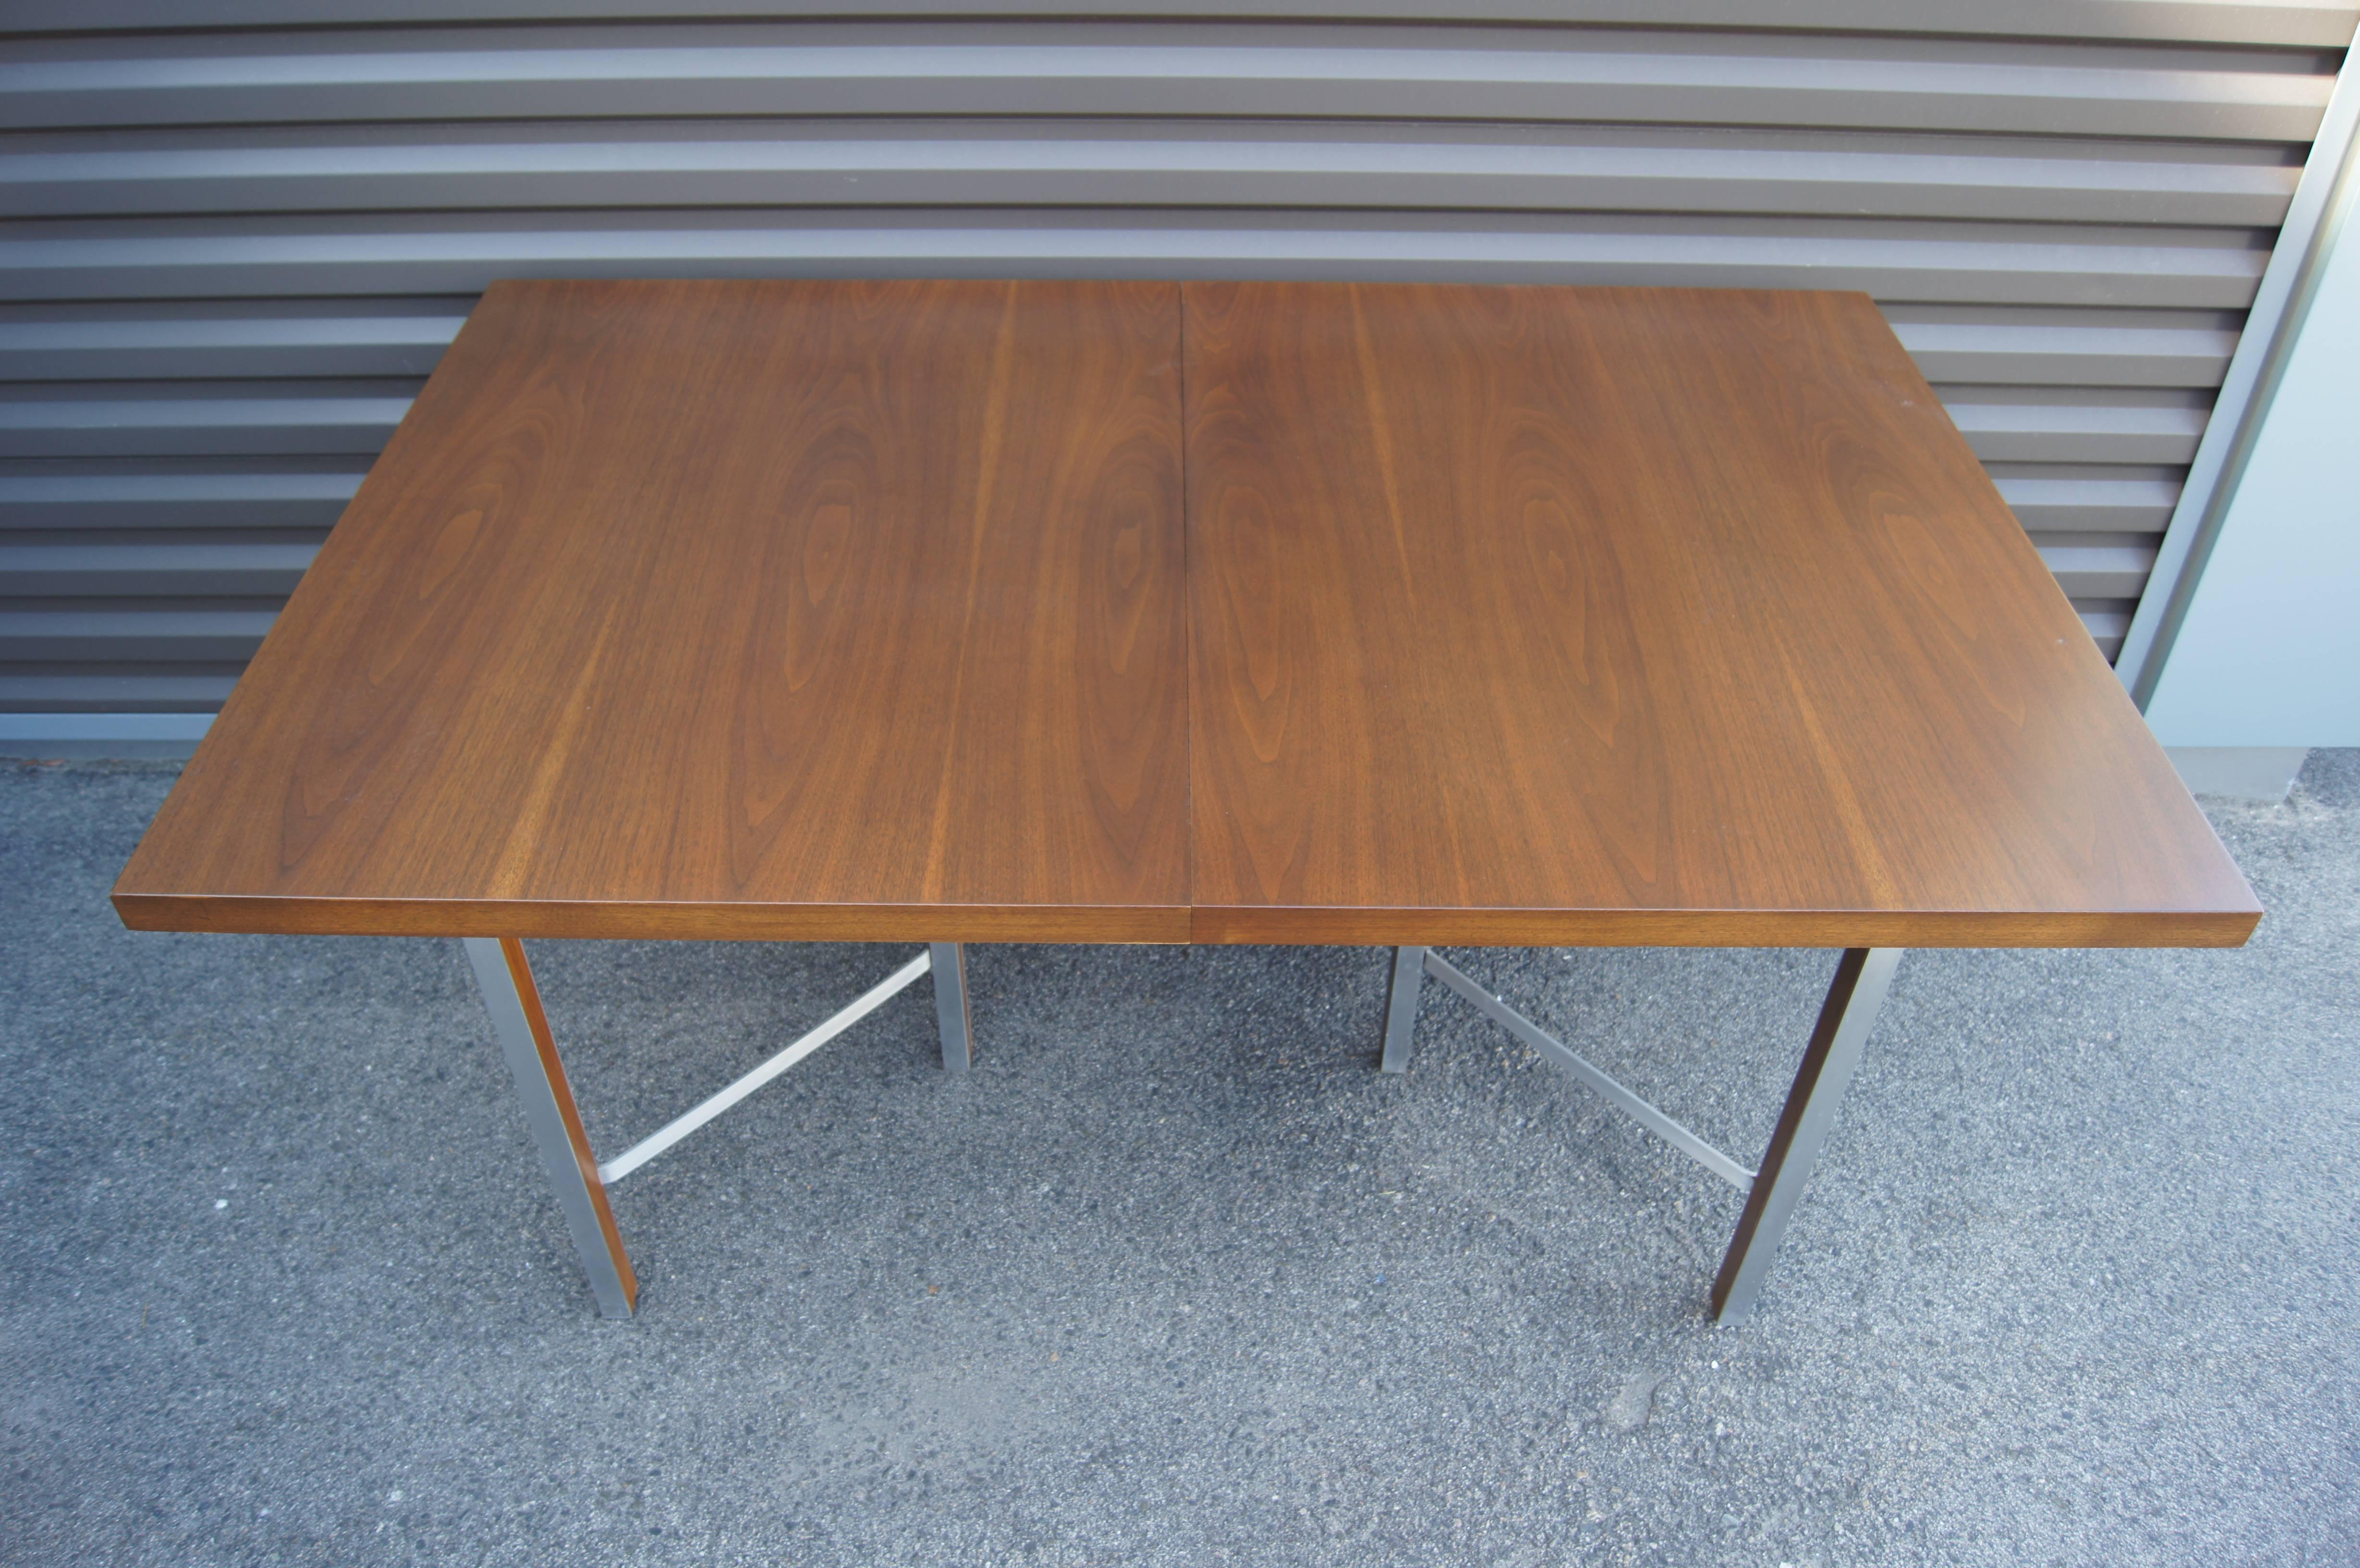 Paul McCobb hat diesen markanten Esstisch als Teil seiner Irwin Group Collection für Calvin Furniture entworfen. Die Platte aus Nussbaumholz ruht auf schlanken, gewinkelten Aluminiumbeinen. Mit zwei 15-Zoll-Blättern lässt sich der Tisch auf bis zu